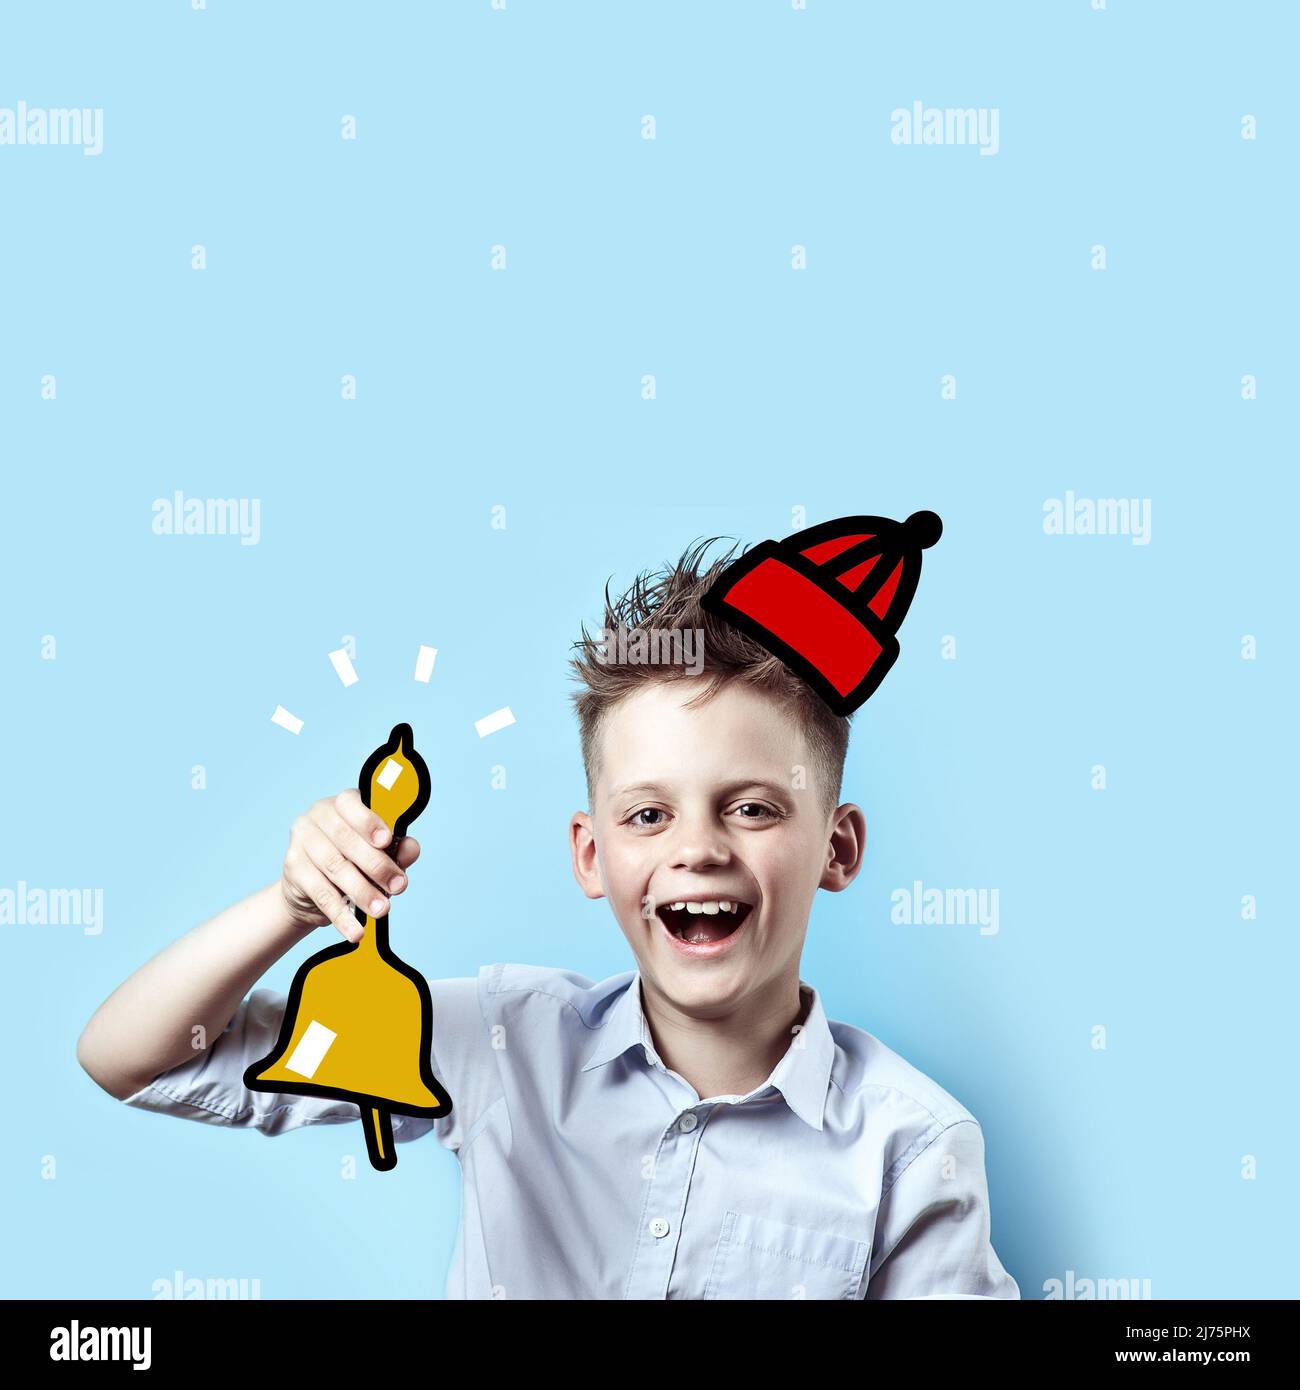 Un concept sur le thème de retour à l'école, un portrait d'un garçon en riant dans une chemise légère et chapeau qui sonne la cloche de l'école, sur un fond bleu Banque D'Images